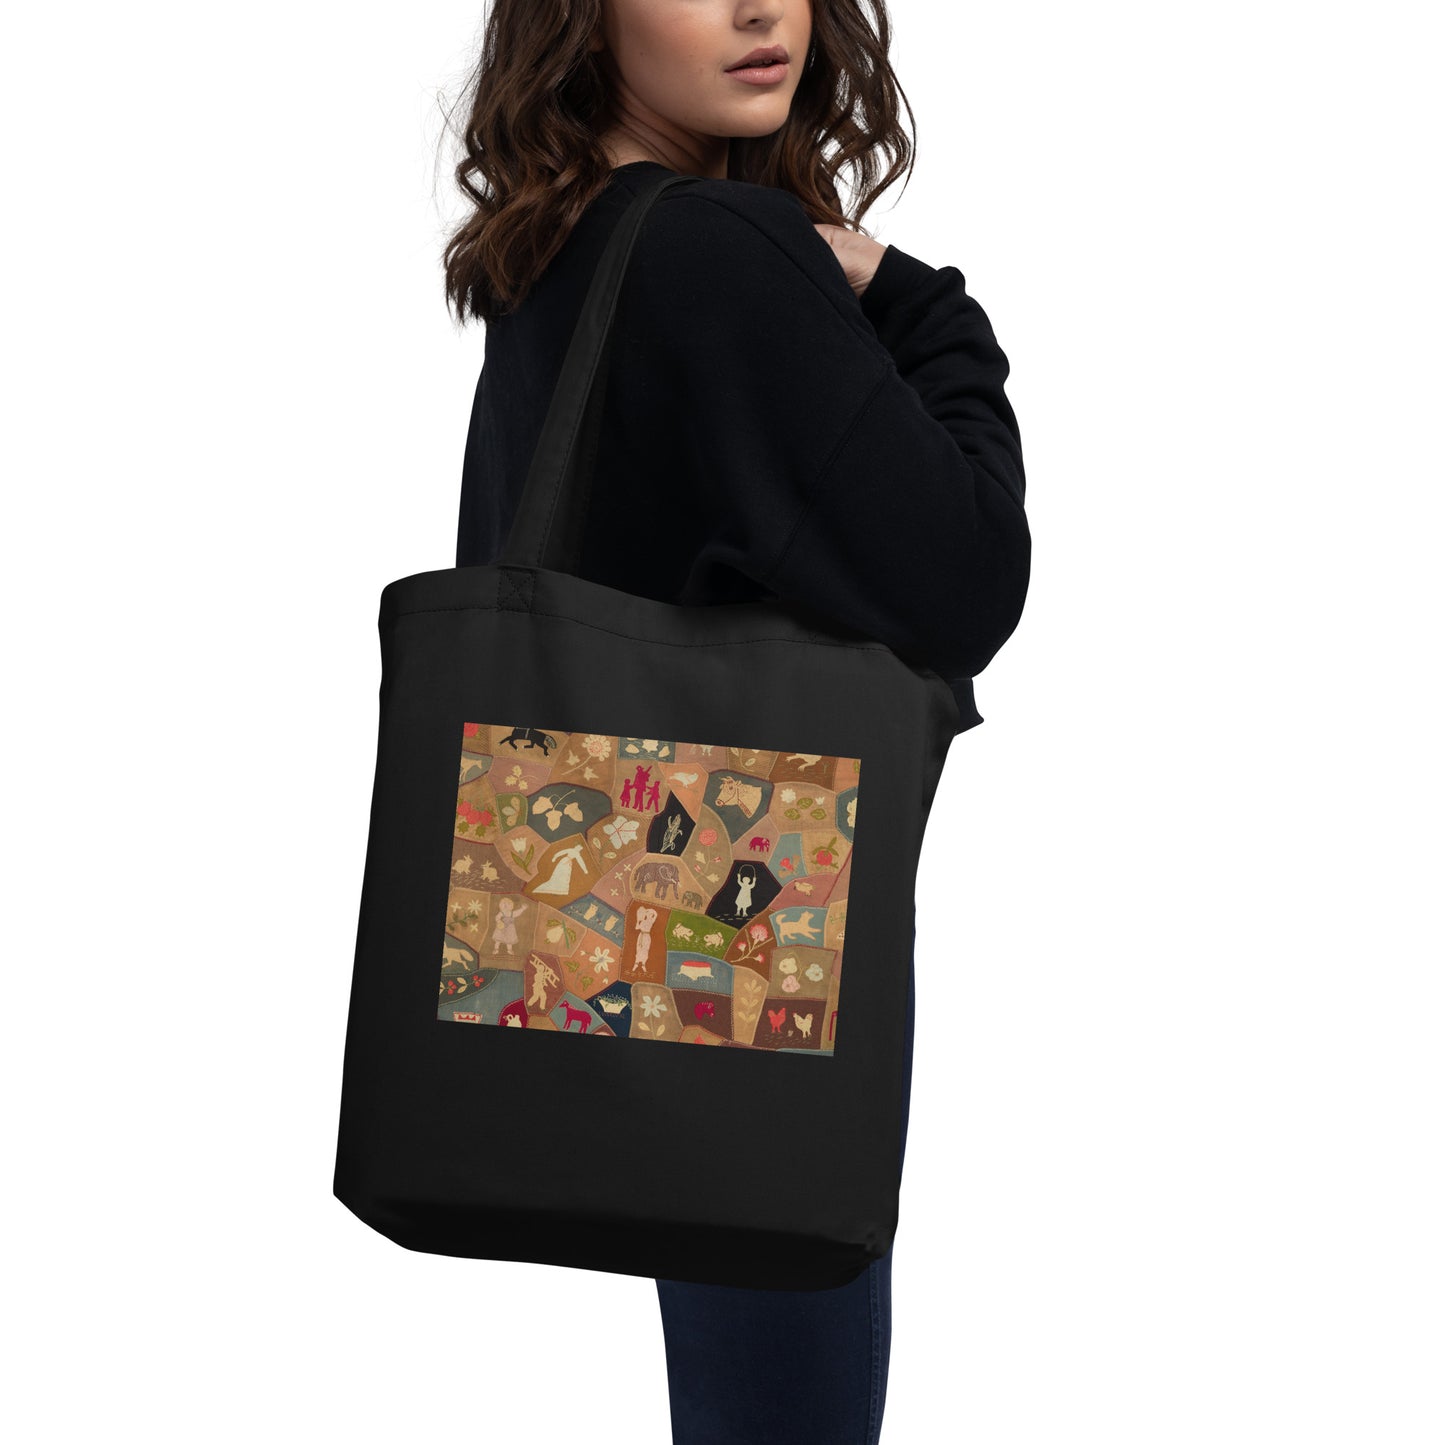 Crazy-quilt design Eco Tote Bag